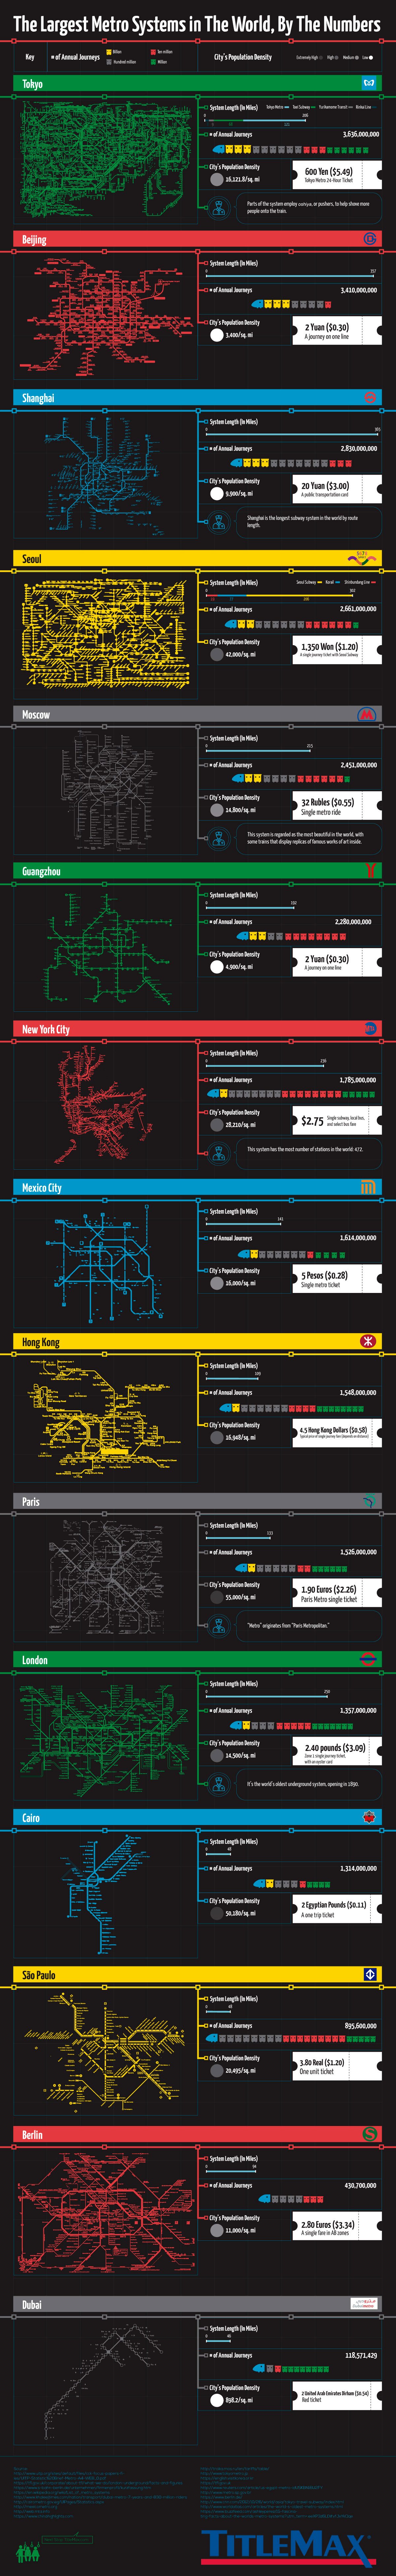  Крупнейшие системы метро в мире в цифрах - TitleMax.com - Инфографика 